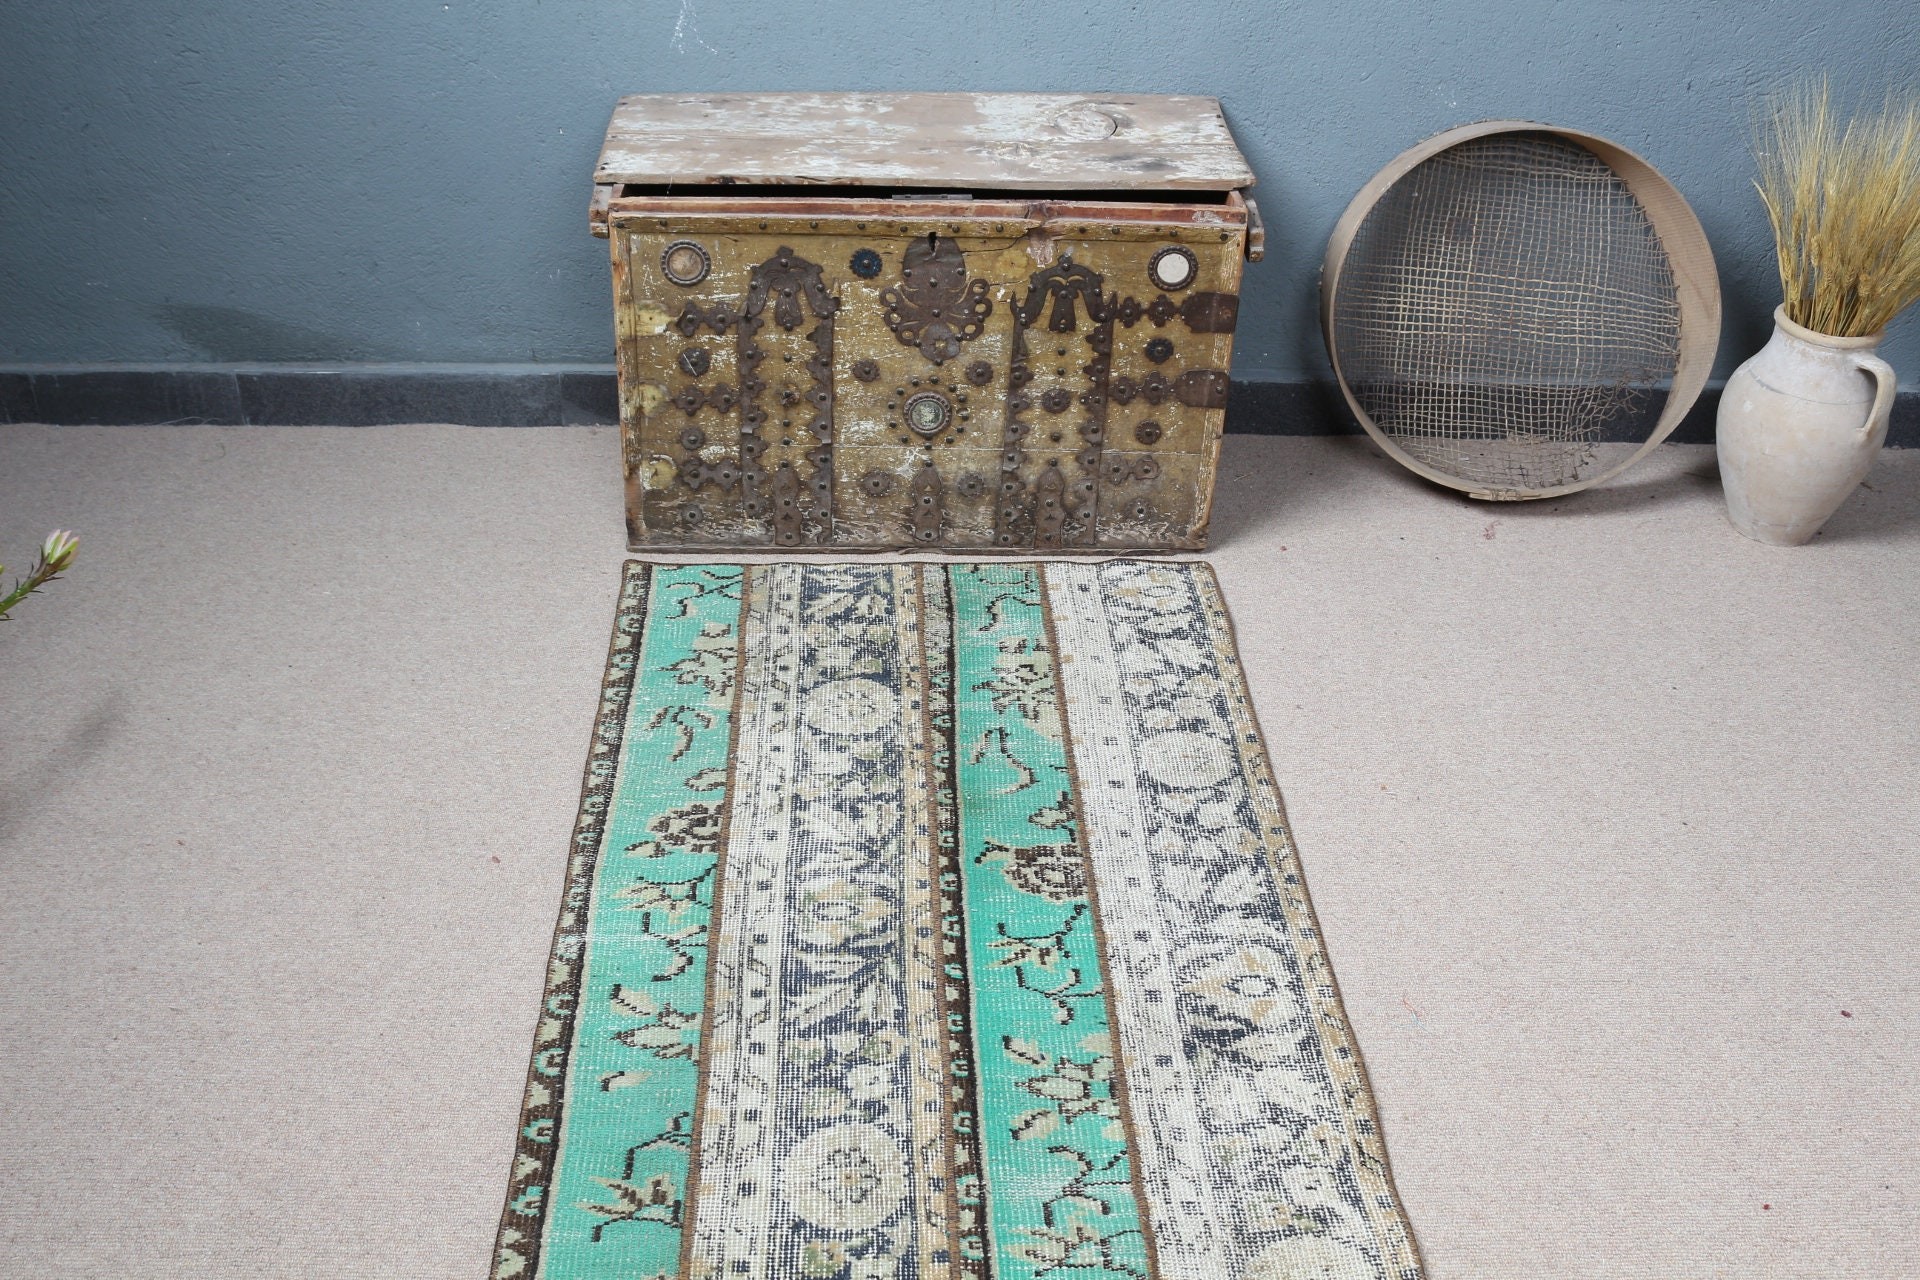 Oriental Rugs, Vintage Rug, Stair Rug, Rugs for Runner, 2.6x6.9 ft Runner Rugs, Corridor Rug, Turkish Rug, Oushak Rug, Green Antique Rug